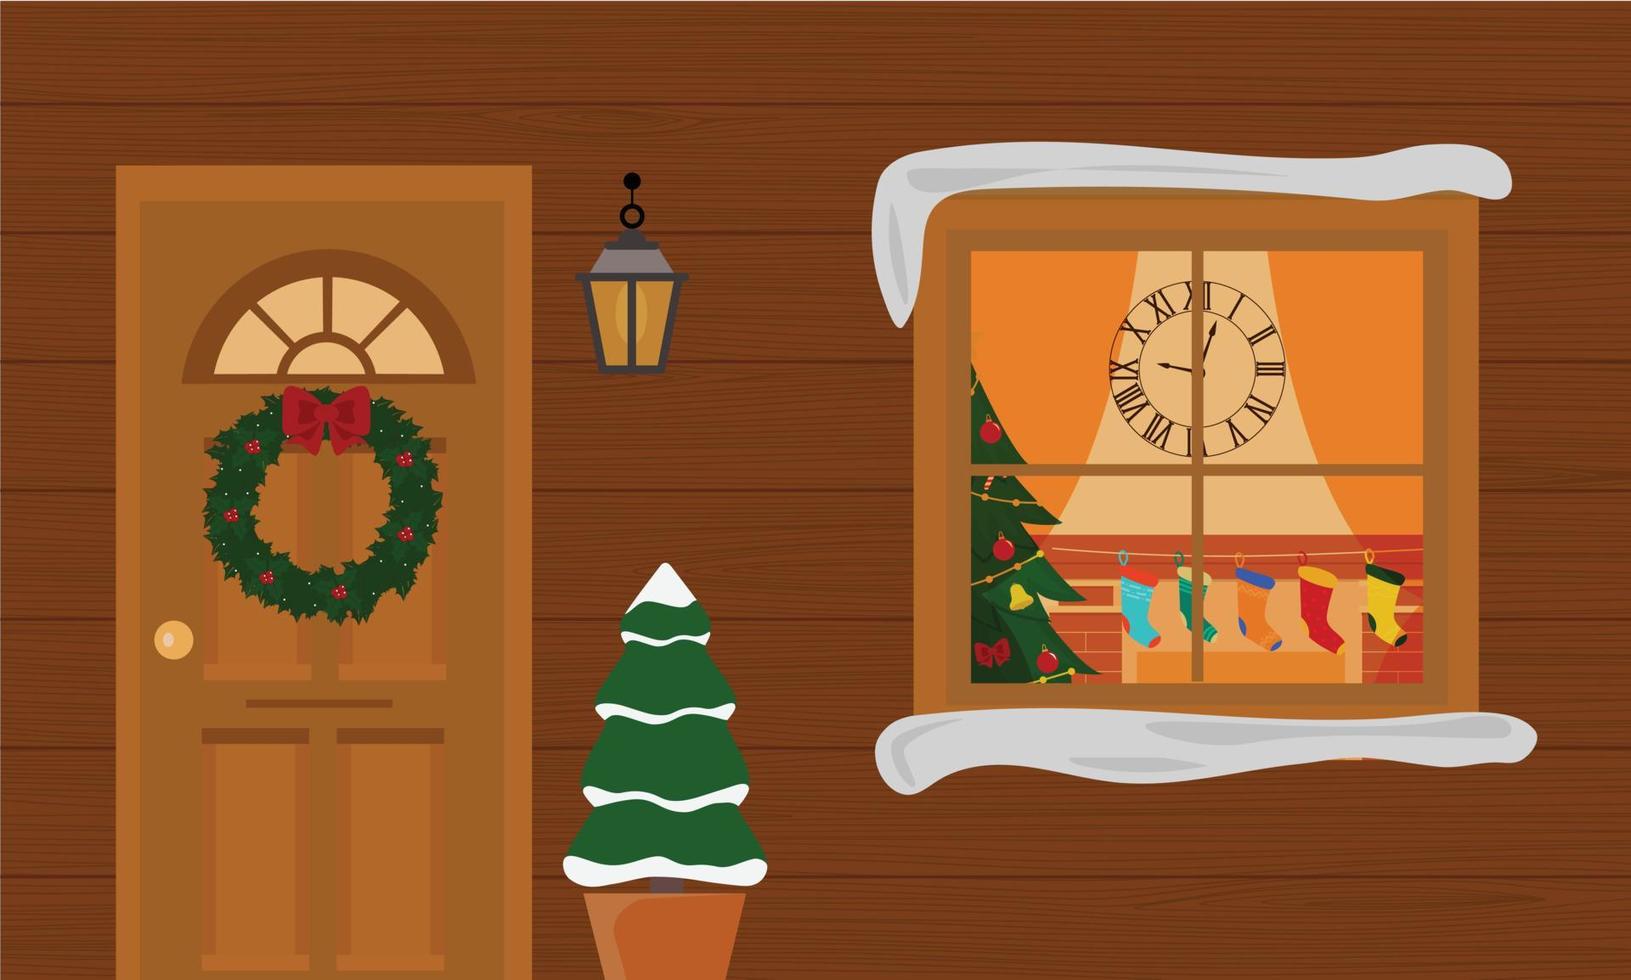 maison de noël avec porche de décoration avec petits arbres et lanternes. fenêtre avec sapin de noël salon de noël, lumières, cadeaux, cheminée. vecteur